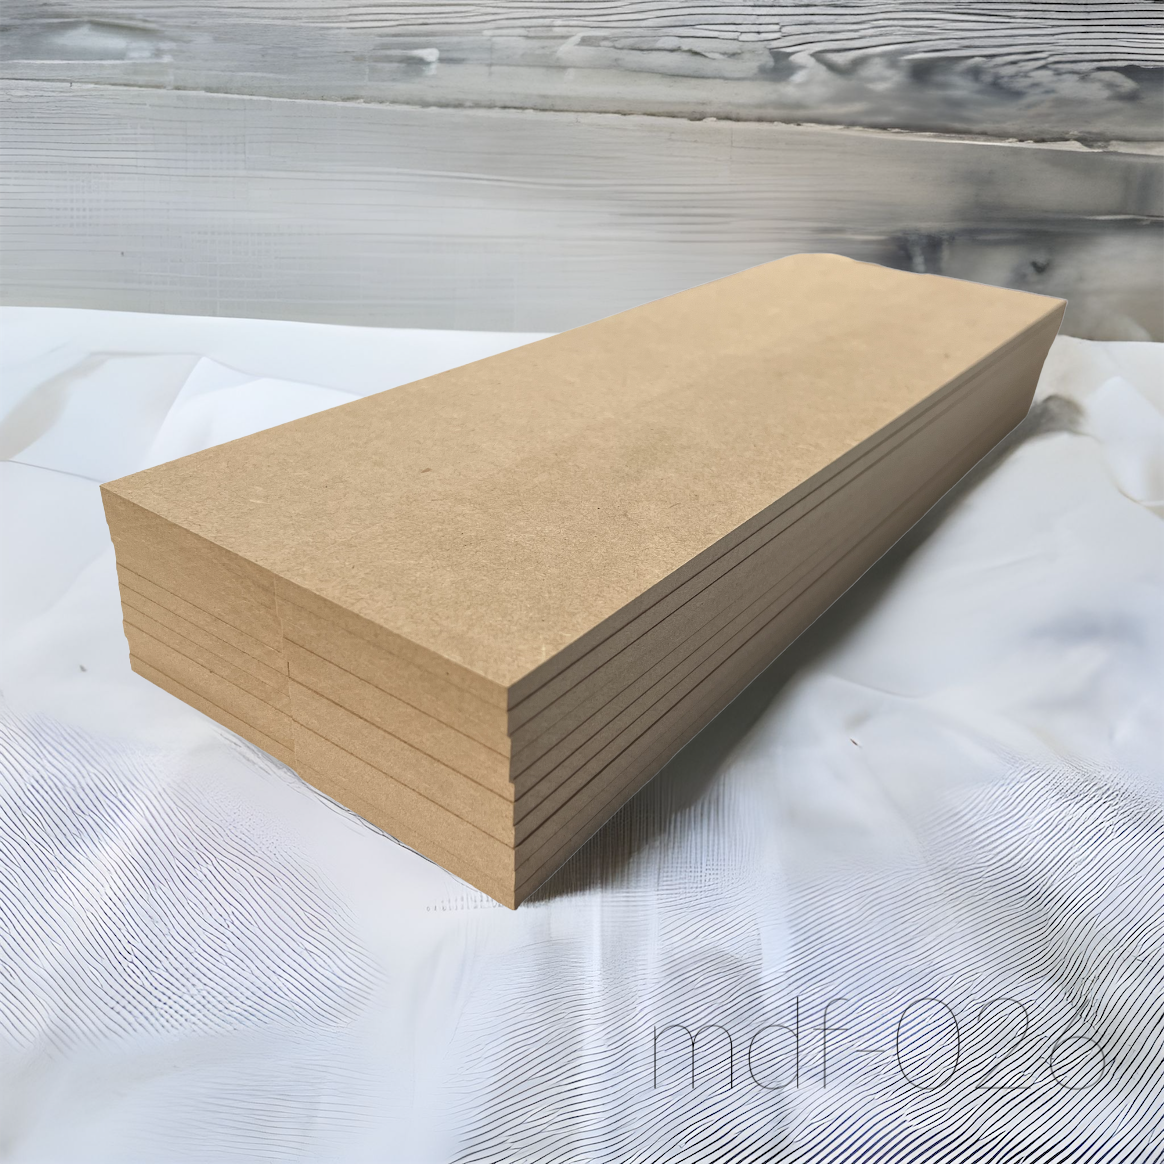 木材 MDF材 24mm厚 900mm×1800mm (3×6・サブロク) 1枚 MDFボード MDF板 直線カットオーダー対応(10回無料) 板 diy 材料 (事業所向け) - 11